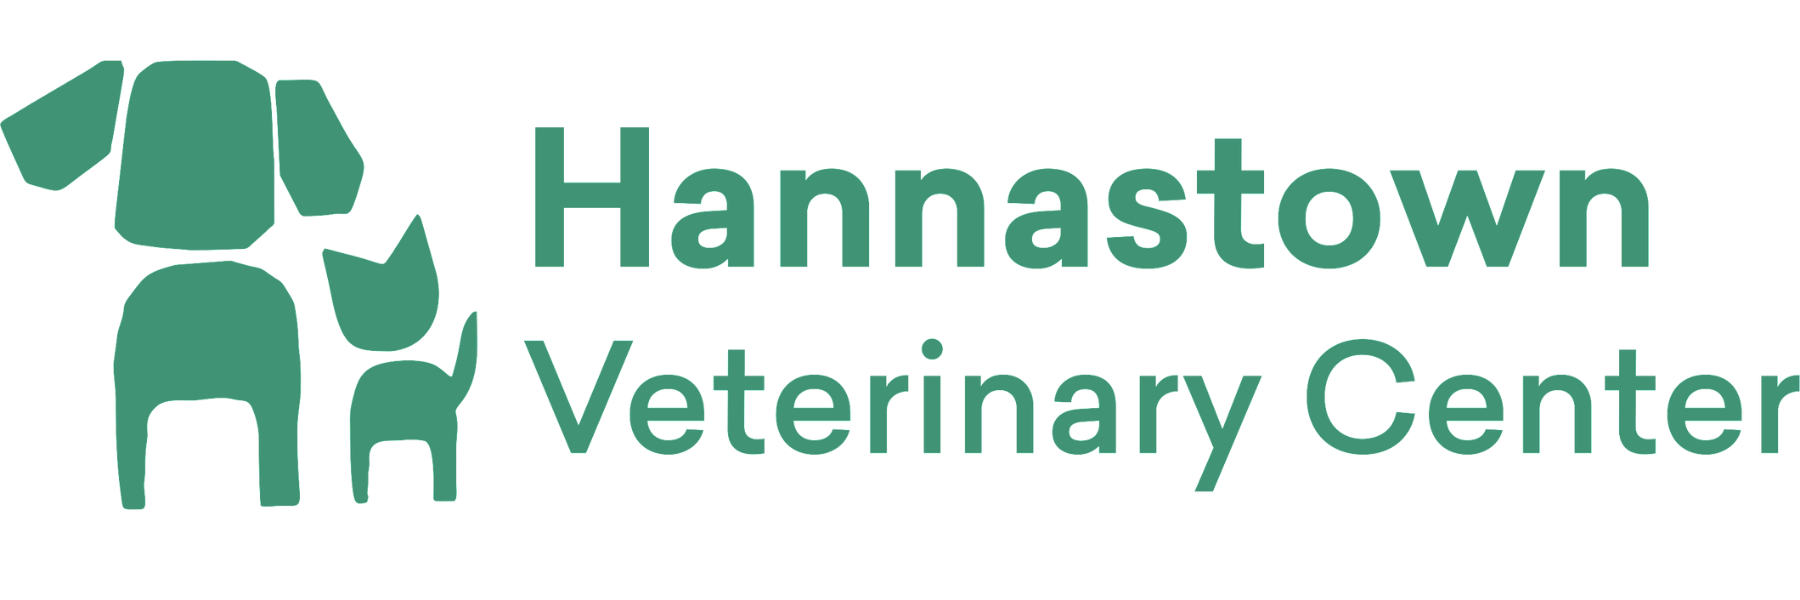 Hannastown Veterinary Center